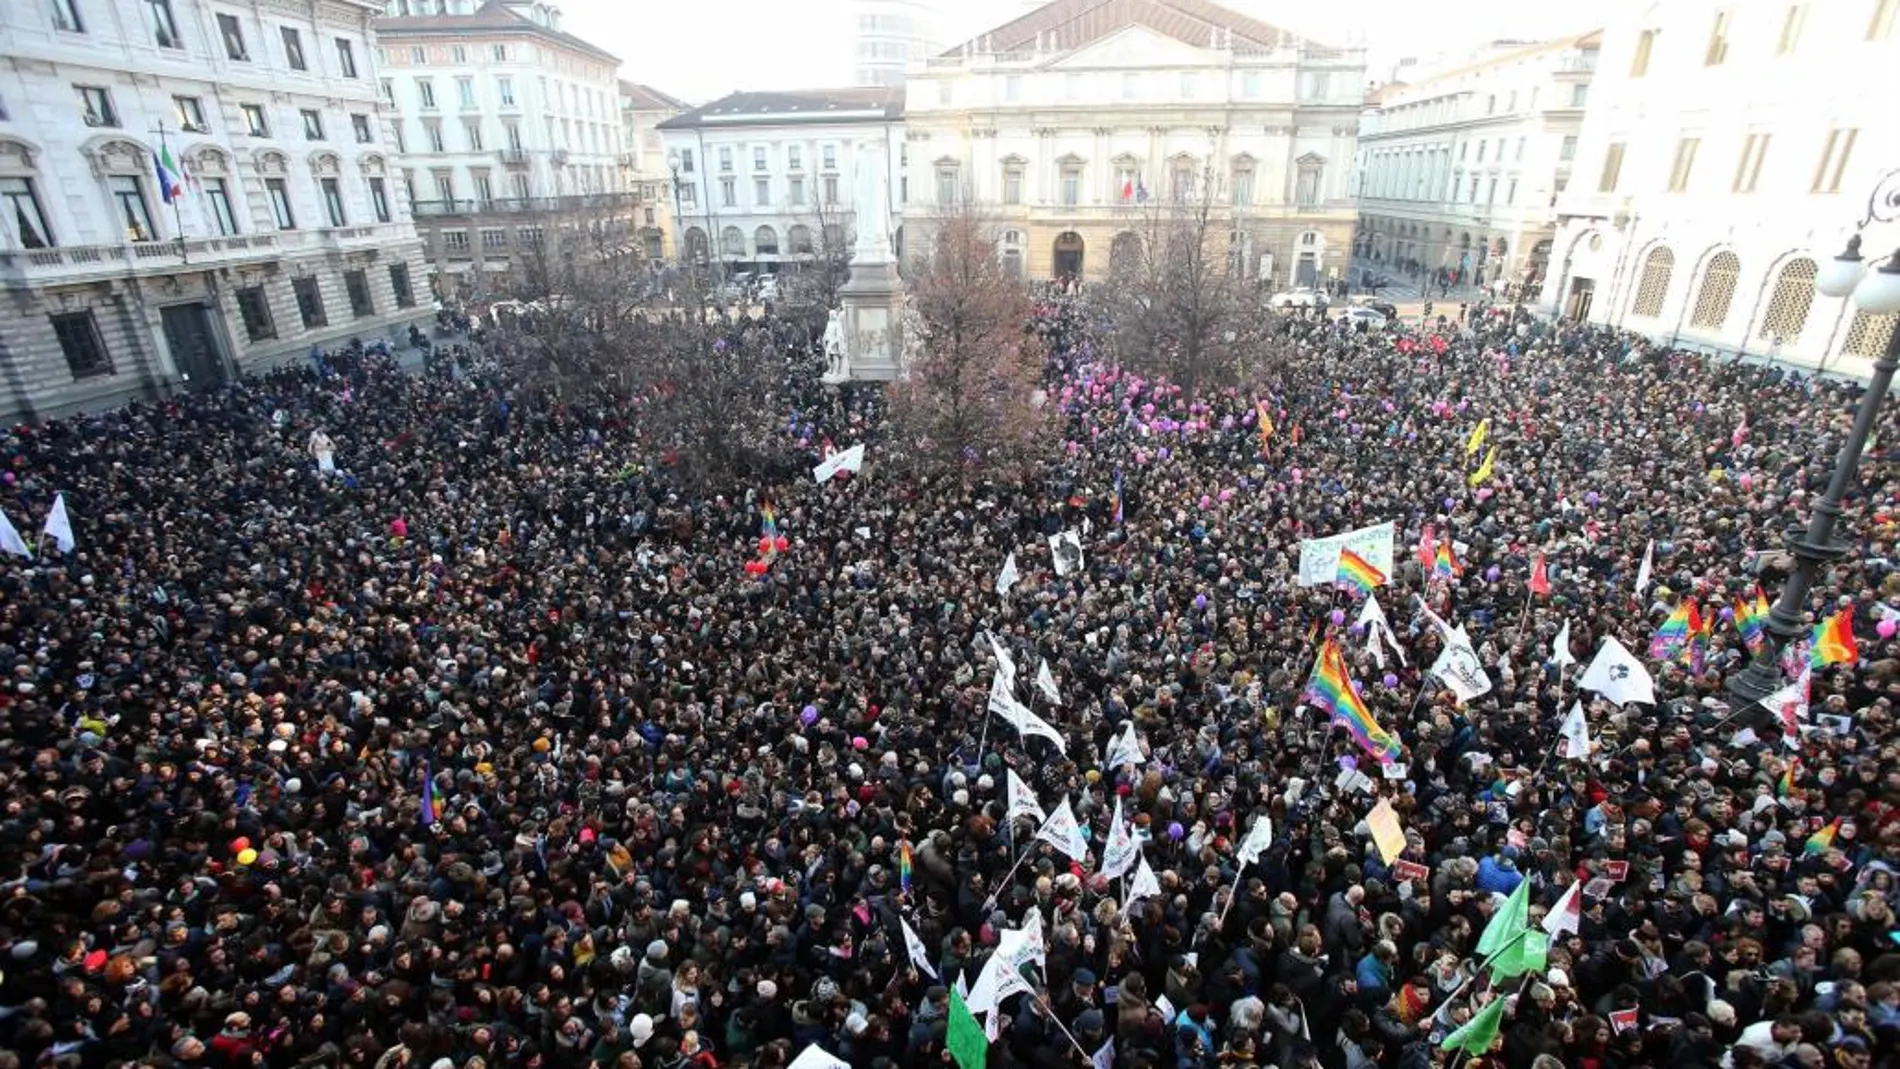 La plazade la Scala de Milán protagonizó la marcha en esta ciudad.